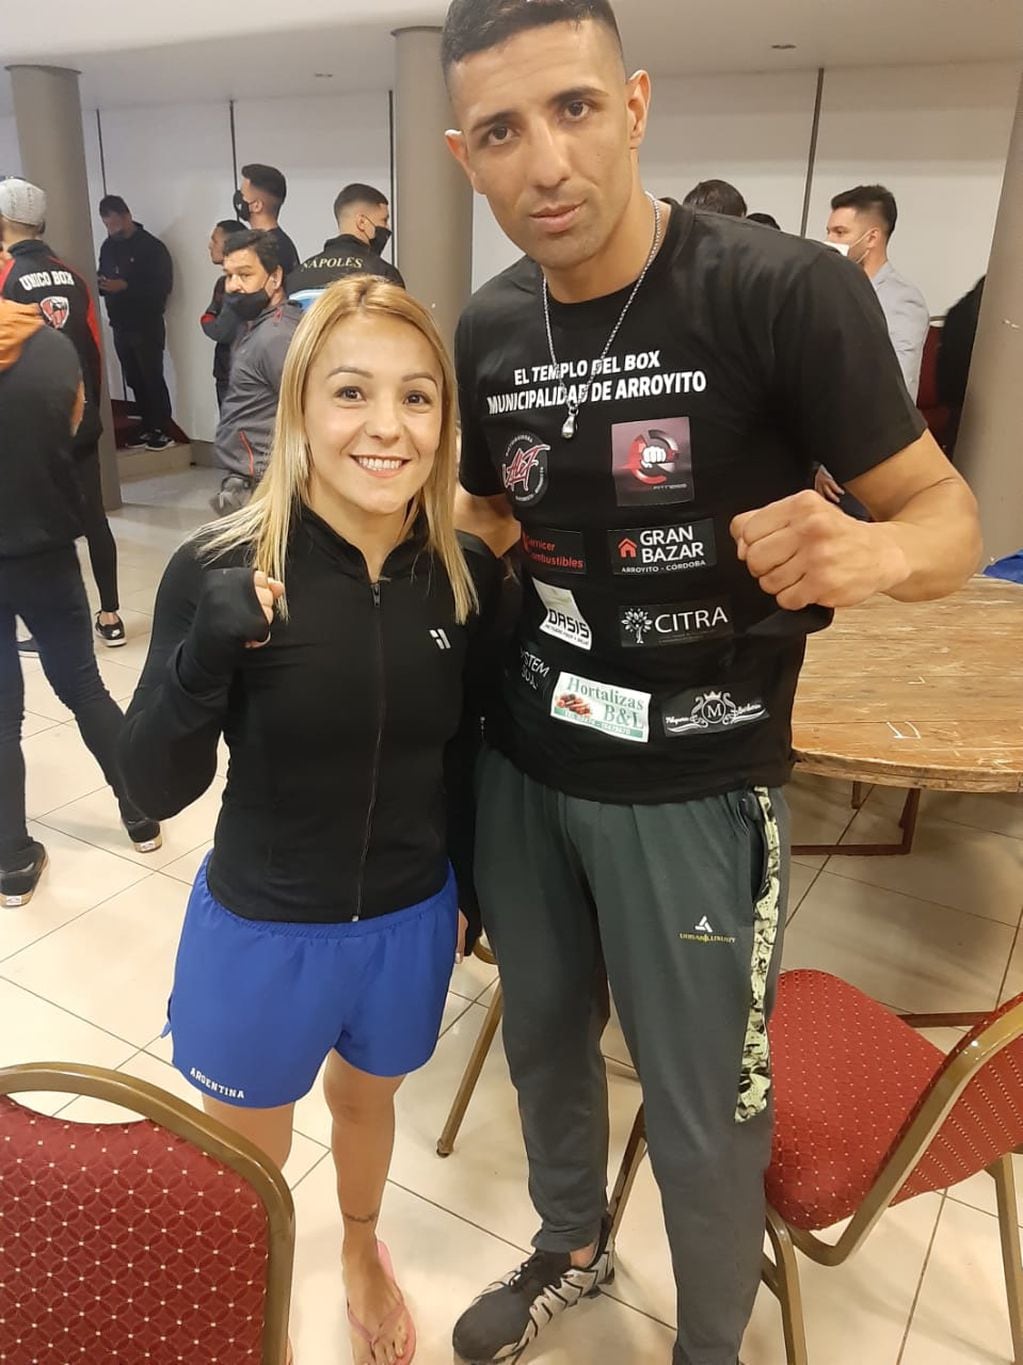 Sergio Córdoba boxeador de Arroyito